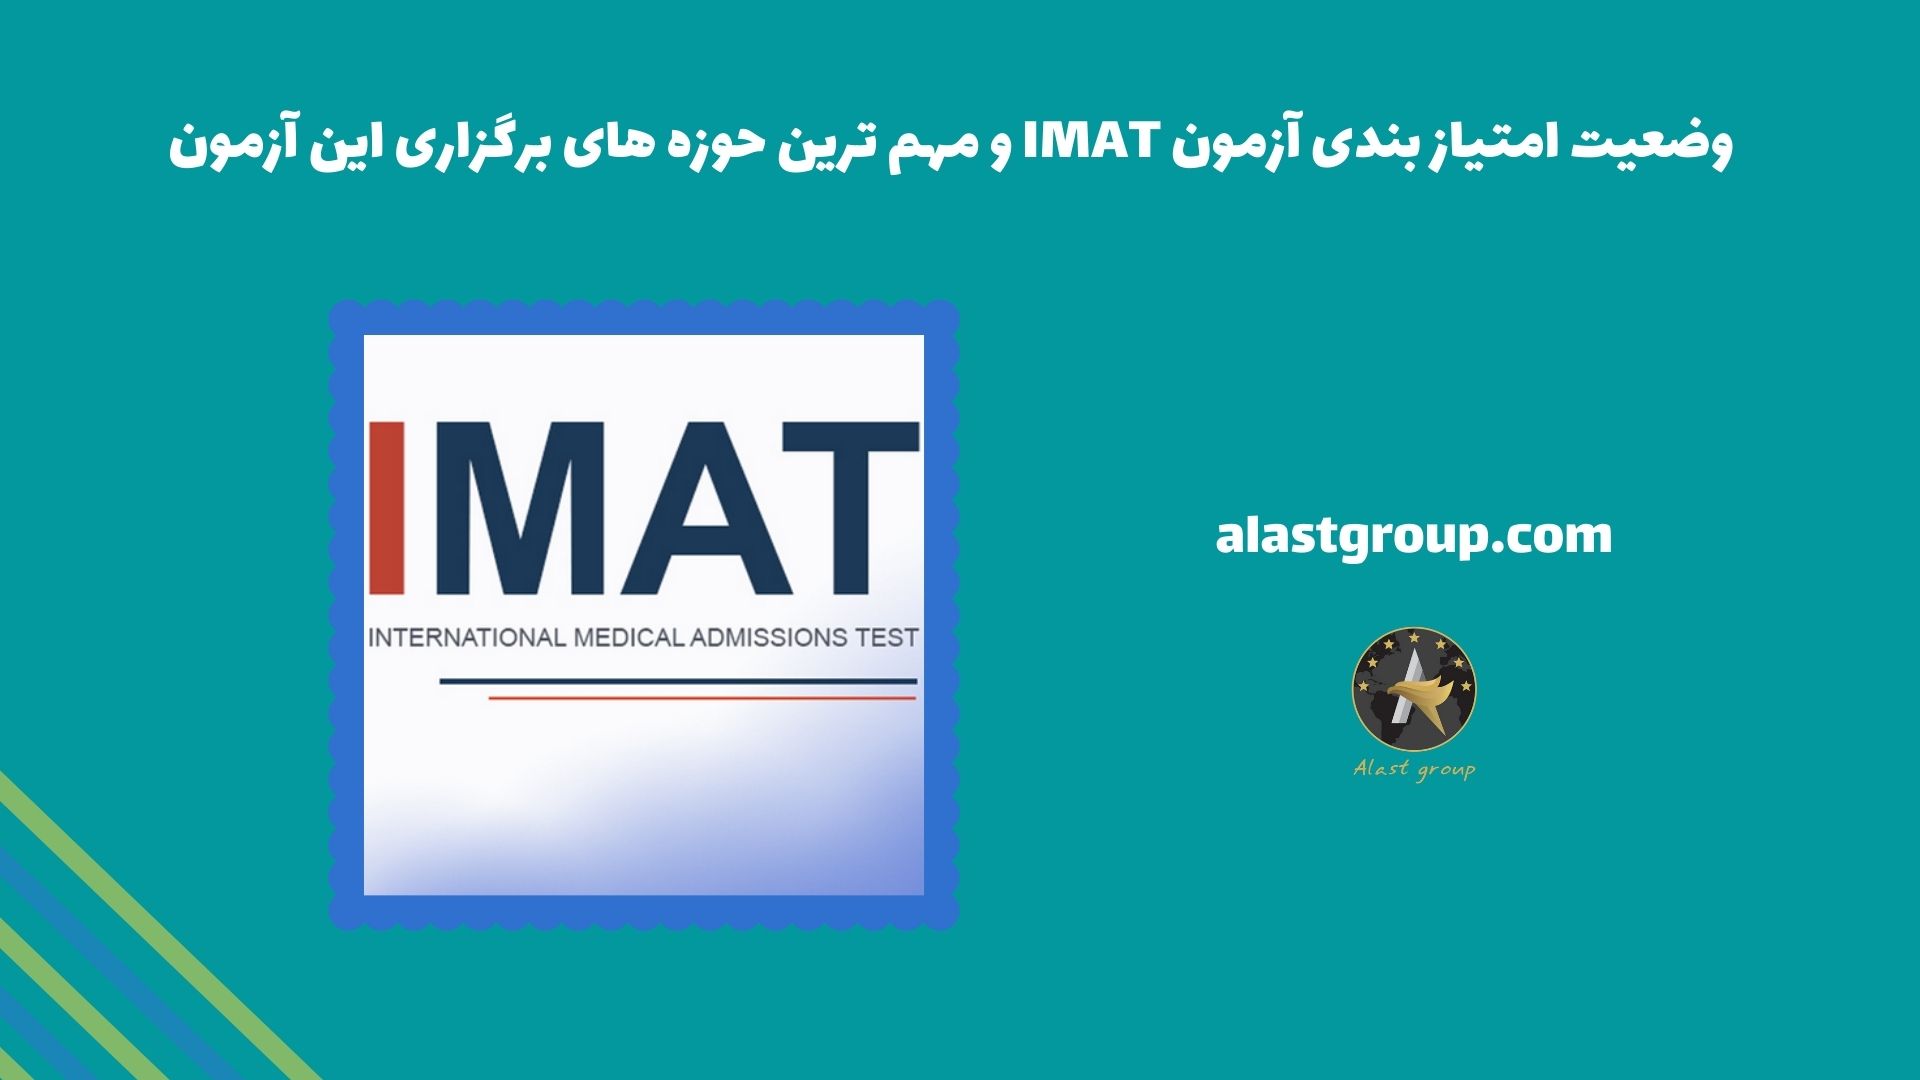 وضعیت امتیاز بندی آزمون IMAT و مهم ترین حوزه های برگزاری این آزمون